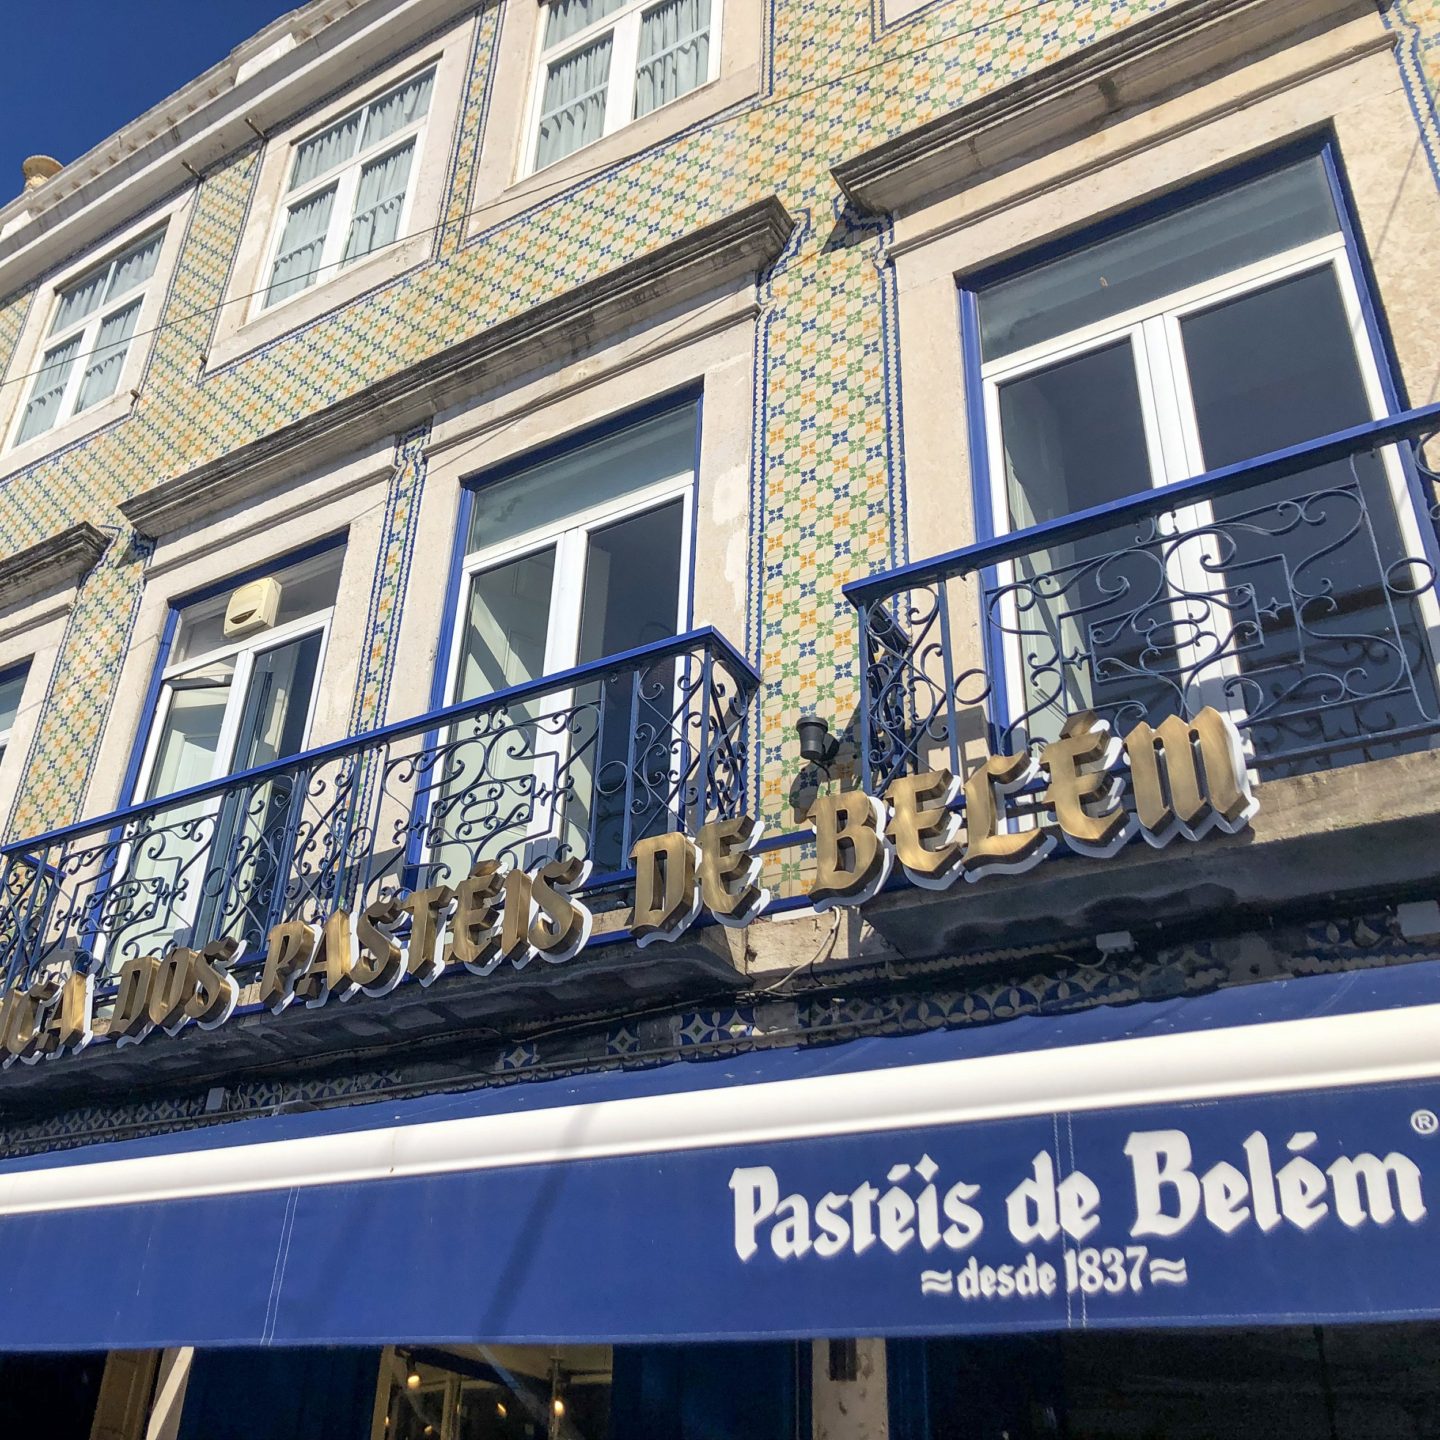 Pasteis de Belem in Lisbon